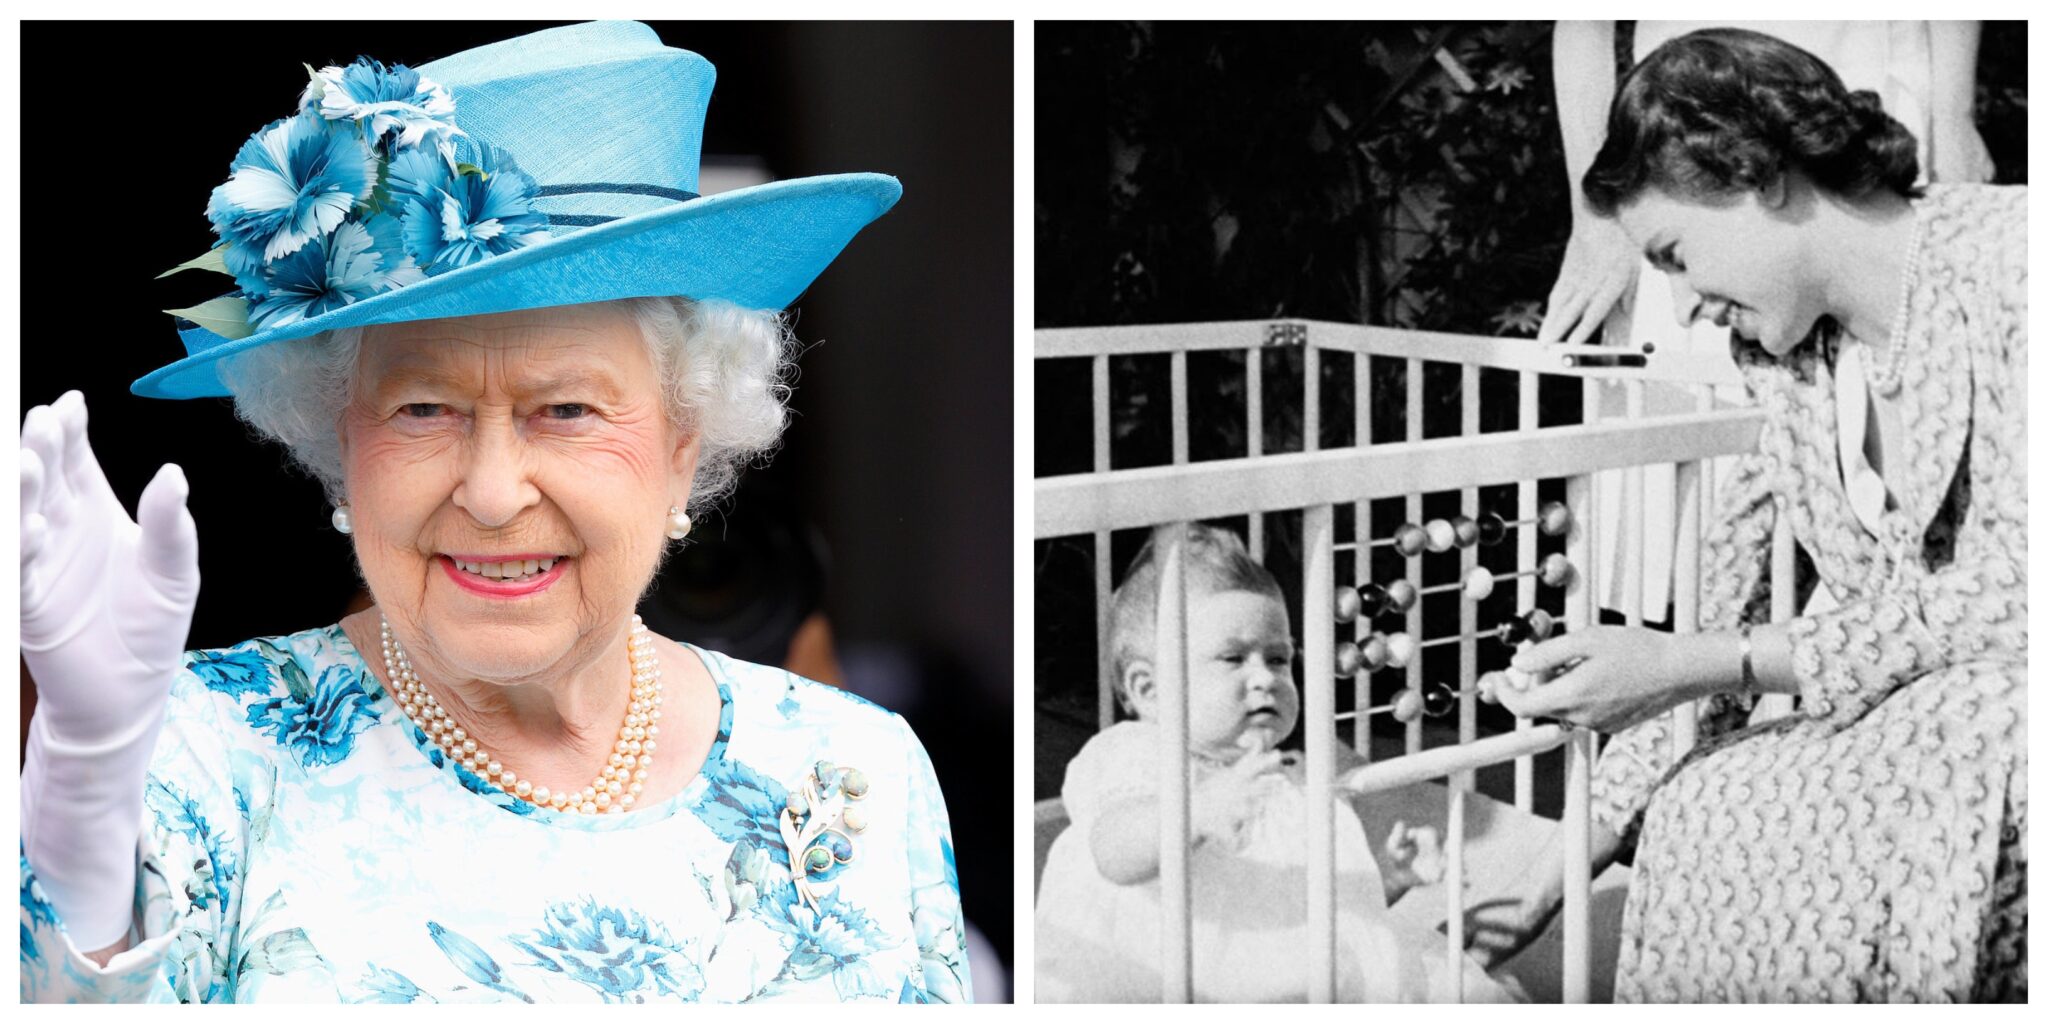 Rainha Isabel Ii 2 Scaled Rainha Isabel Ii Celebra 94º Aniversário. Veja As Imagens Inéditas Da Monarca